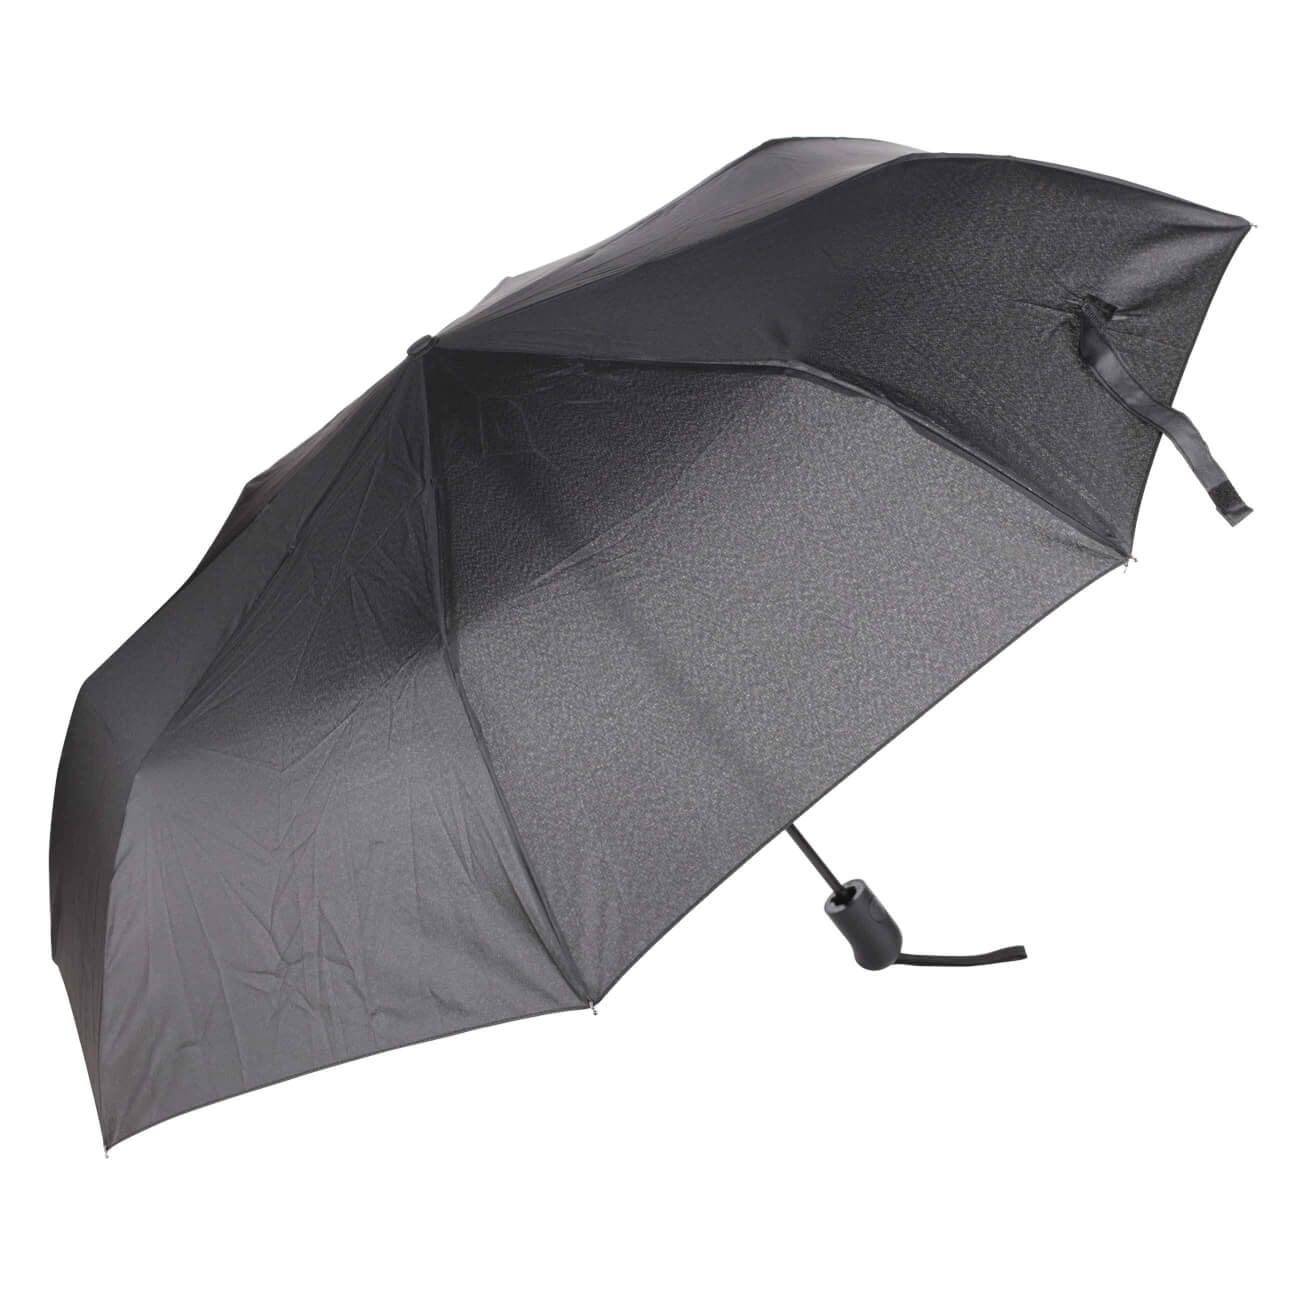 Зонт, 56 см, складной, полу-автоматический, эпонж, черный, Rainy ветрозащитный светодиодный зонт от солнца и дождя легкий компактный складной обратный автоматический сильный зонт